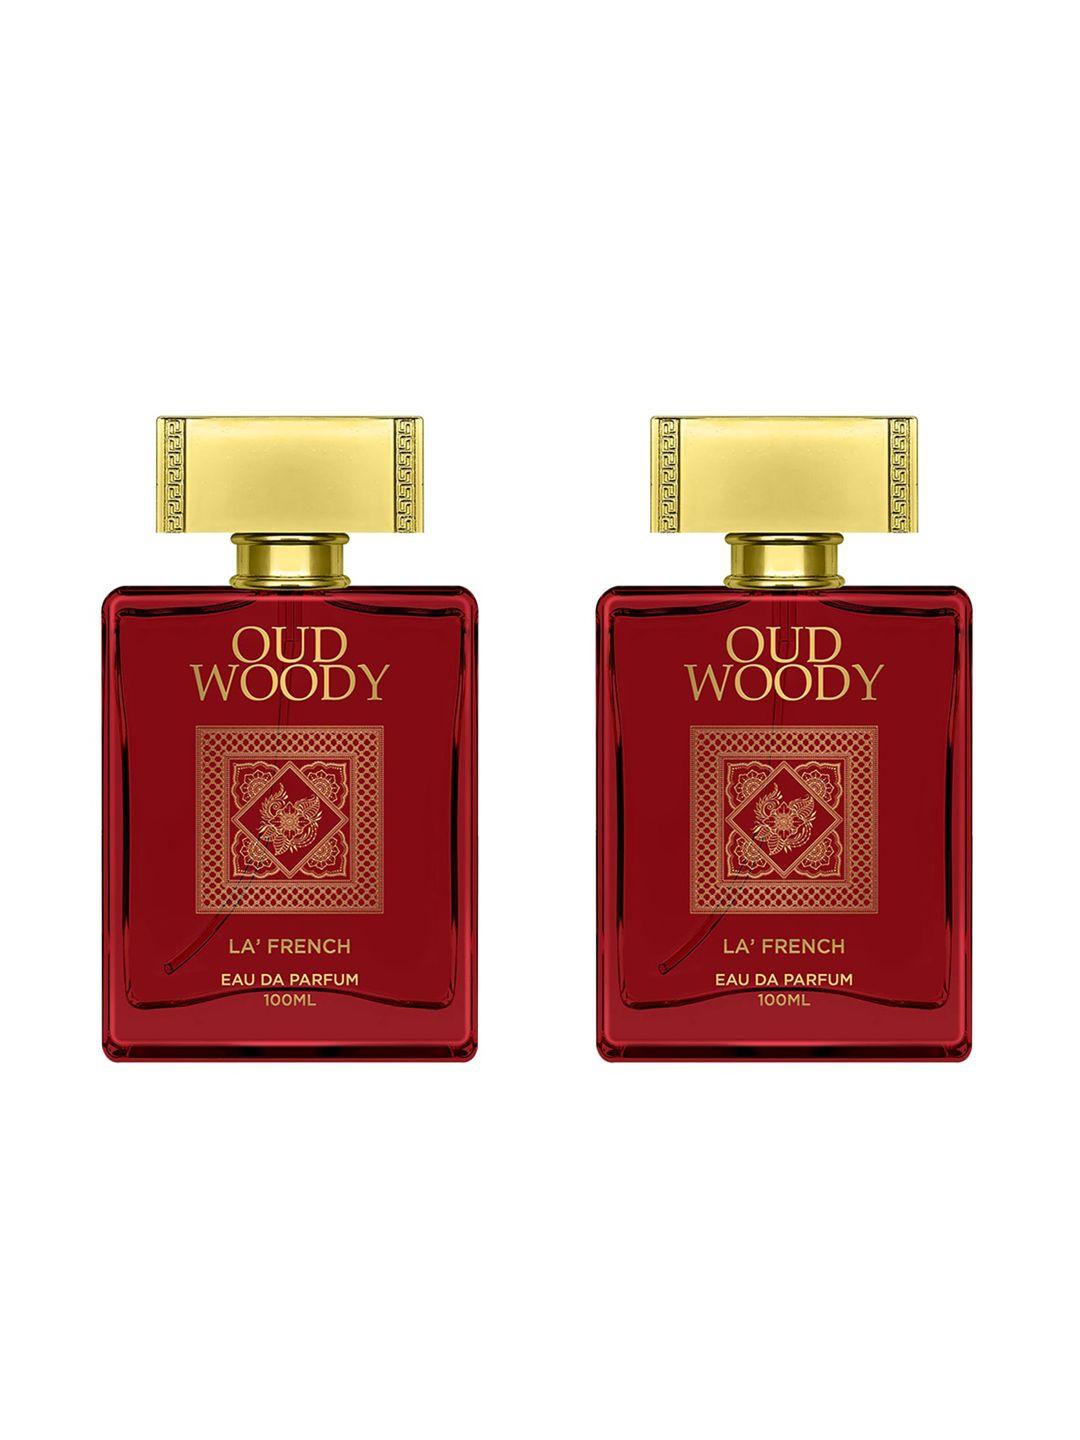 la french men set of 2 oud woody eau de parfum - 100ml each